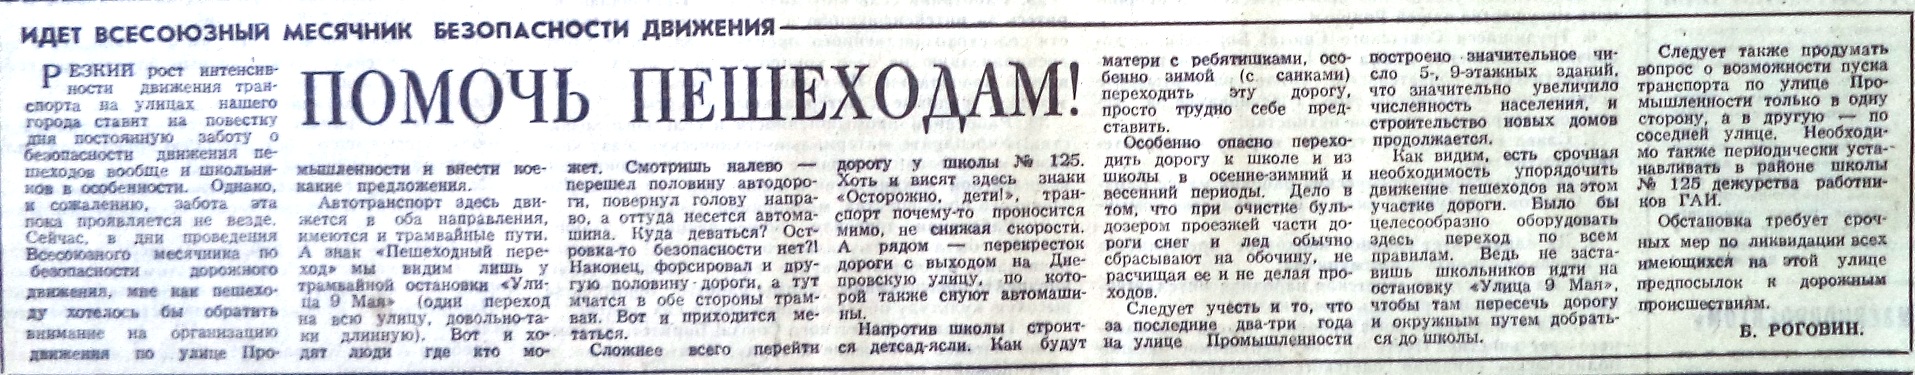 Промышленности-ФОТО-73-ВЗя-1974-12-04-пробл. ул. Промышл.